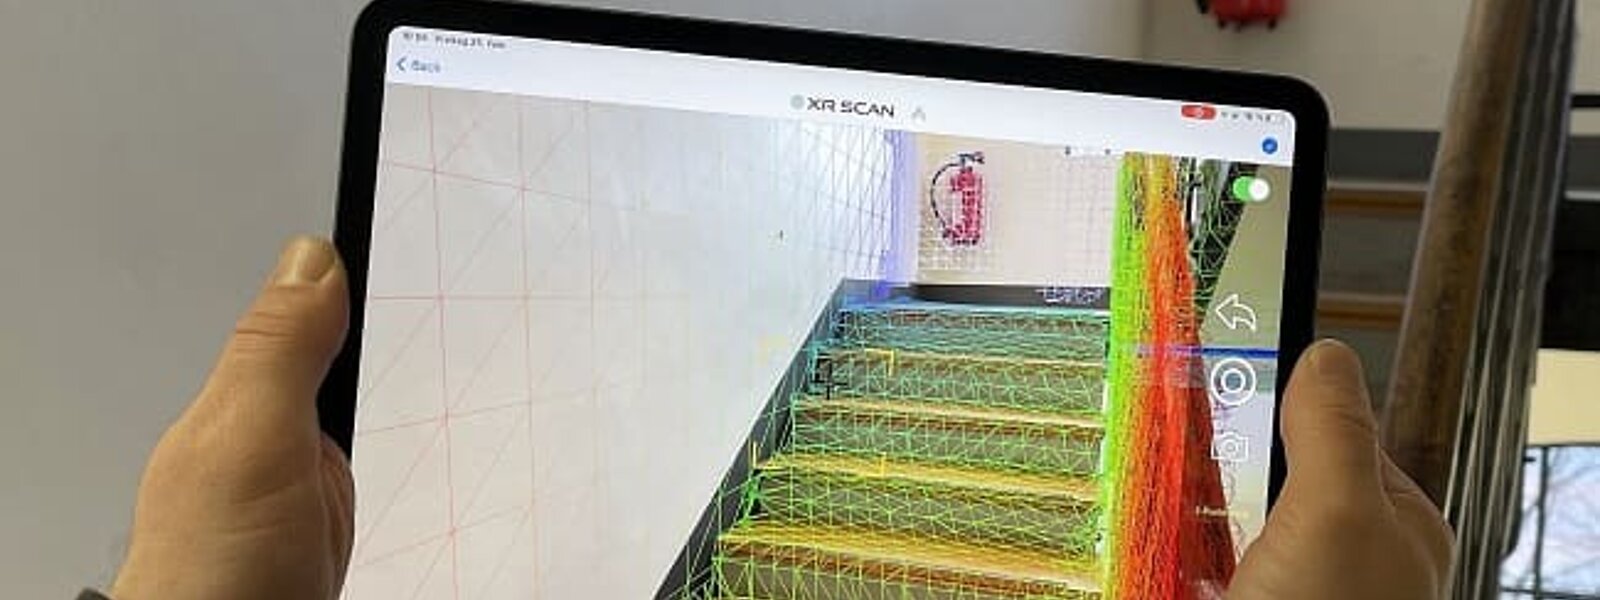 Medición digital de una escalera con XR Scan